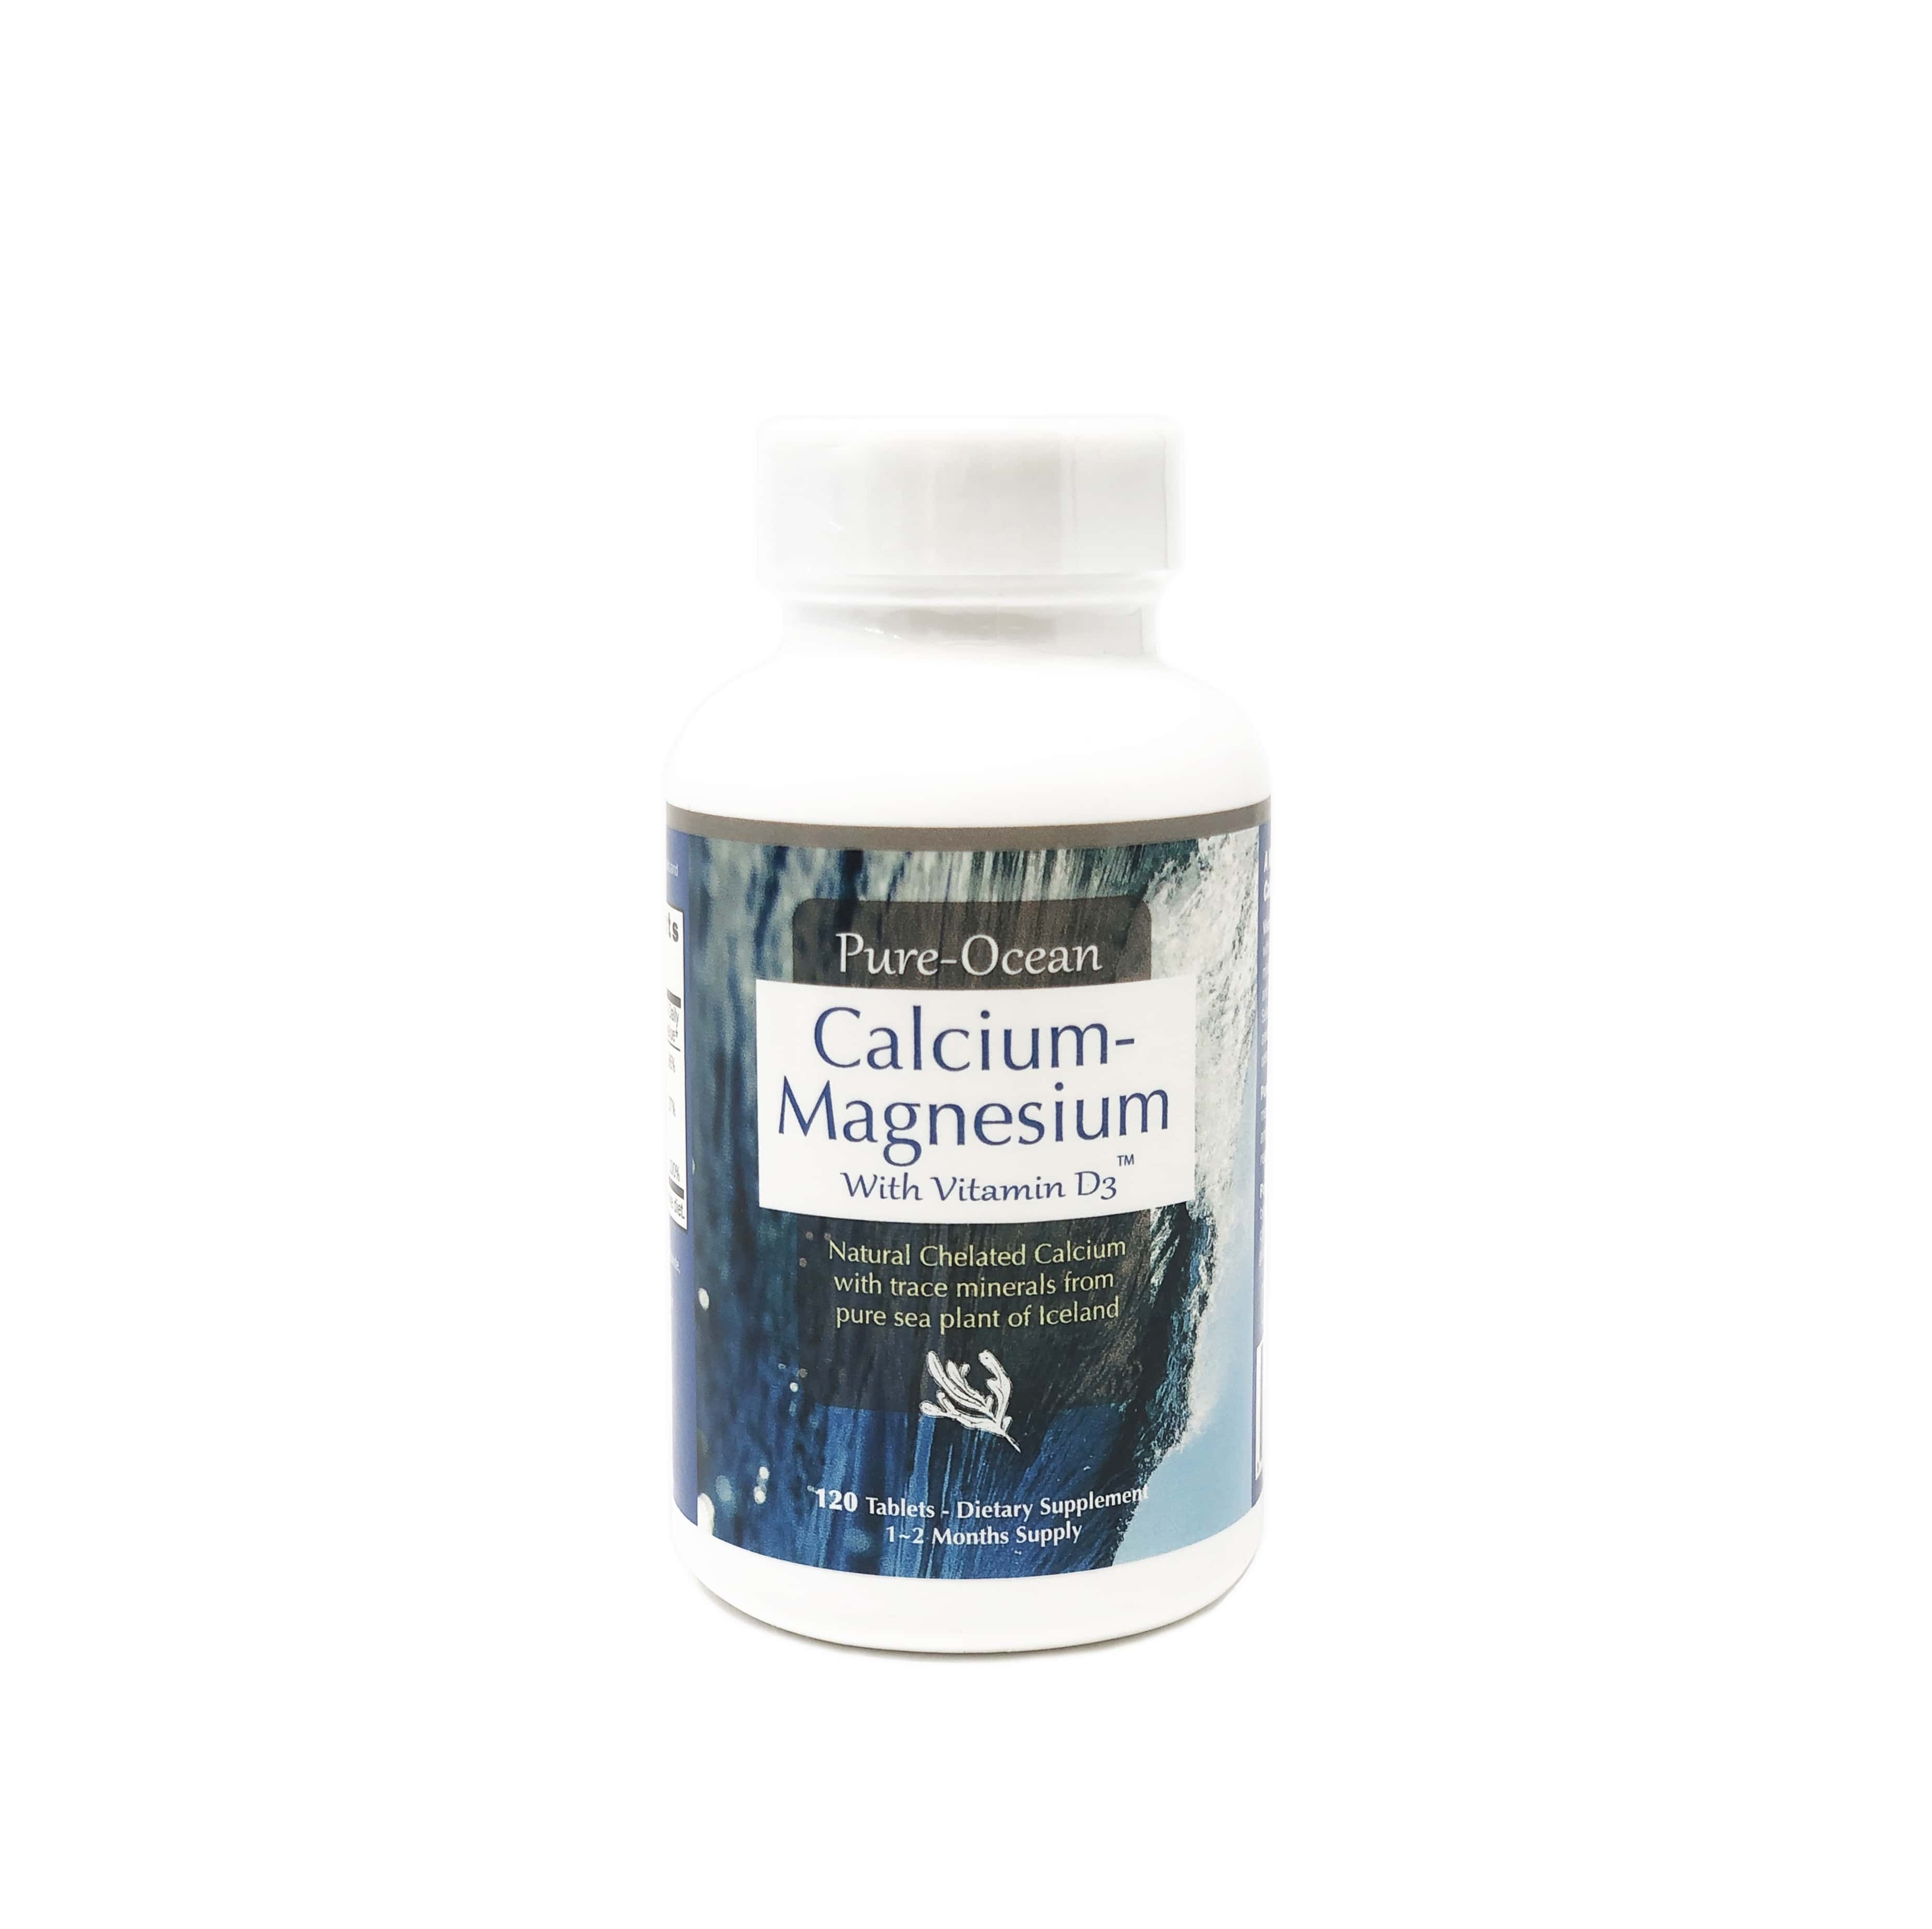 Calcium-Magnesium with Vitamin